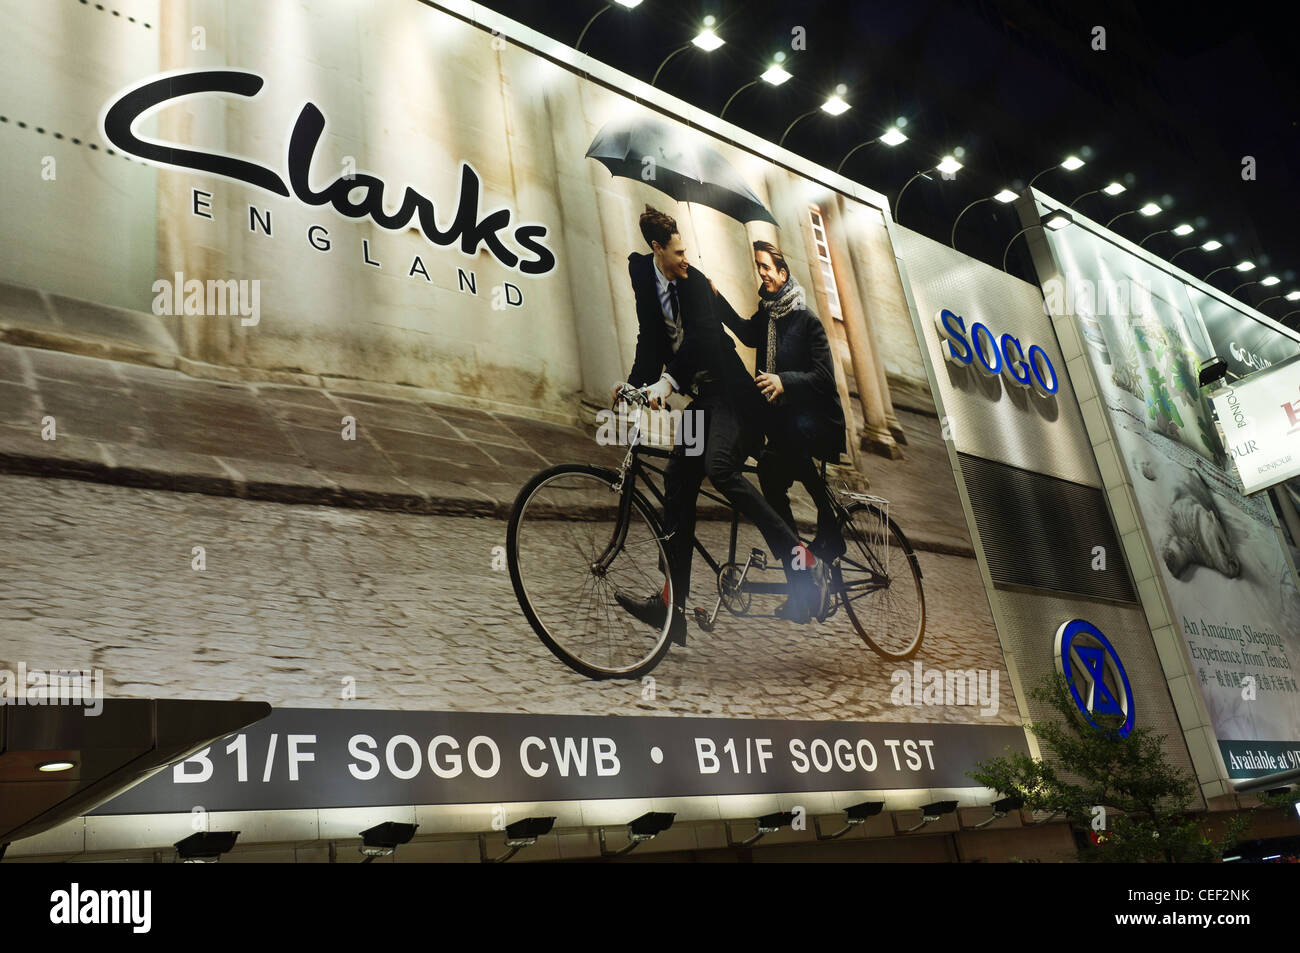 dh CAUSEWAY BAY HONG KONG marque britannique Clarks chaussures panneaux d'affichage de nuit panneaux d'affichage publicité Banque D'Images